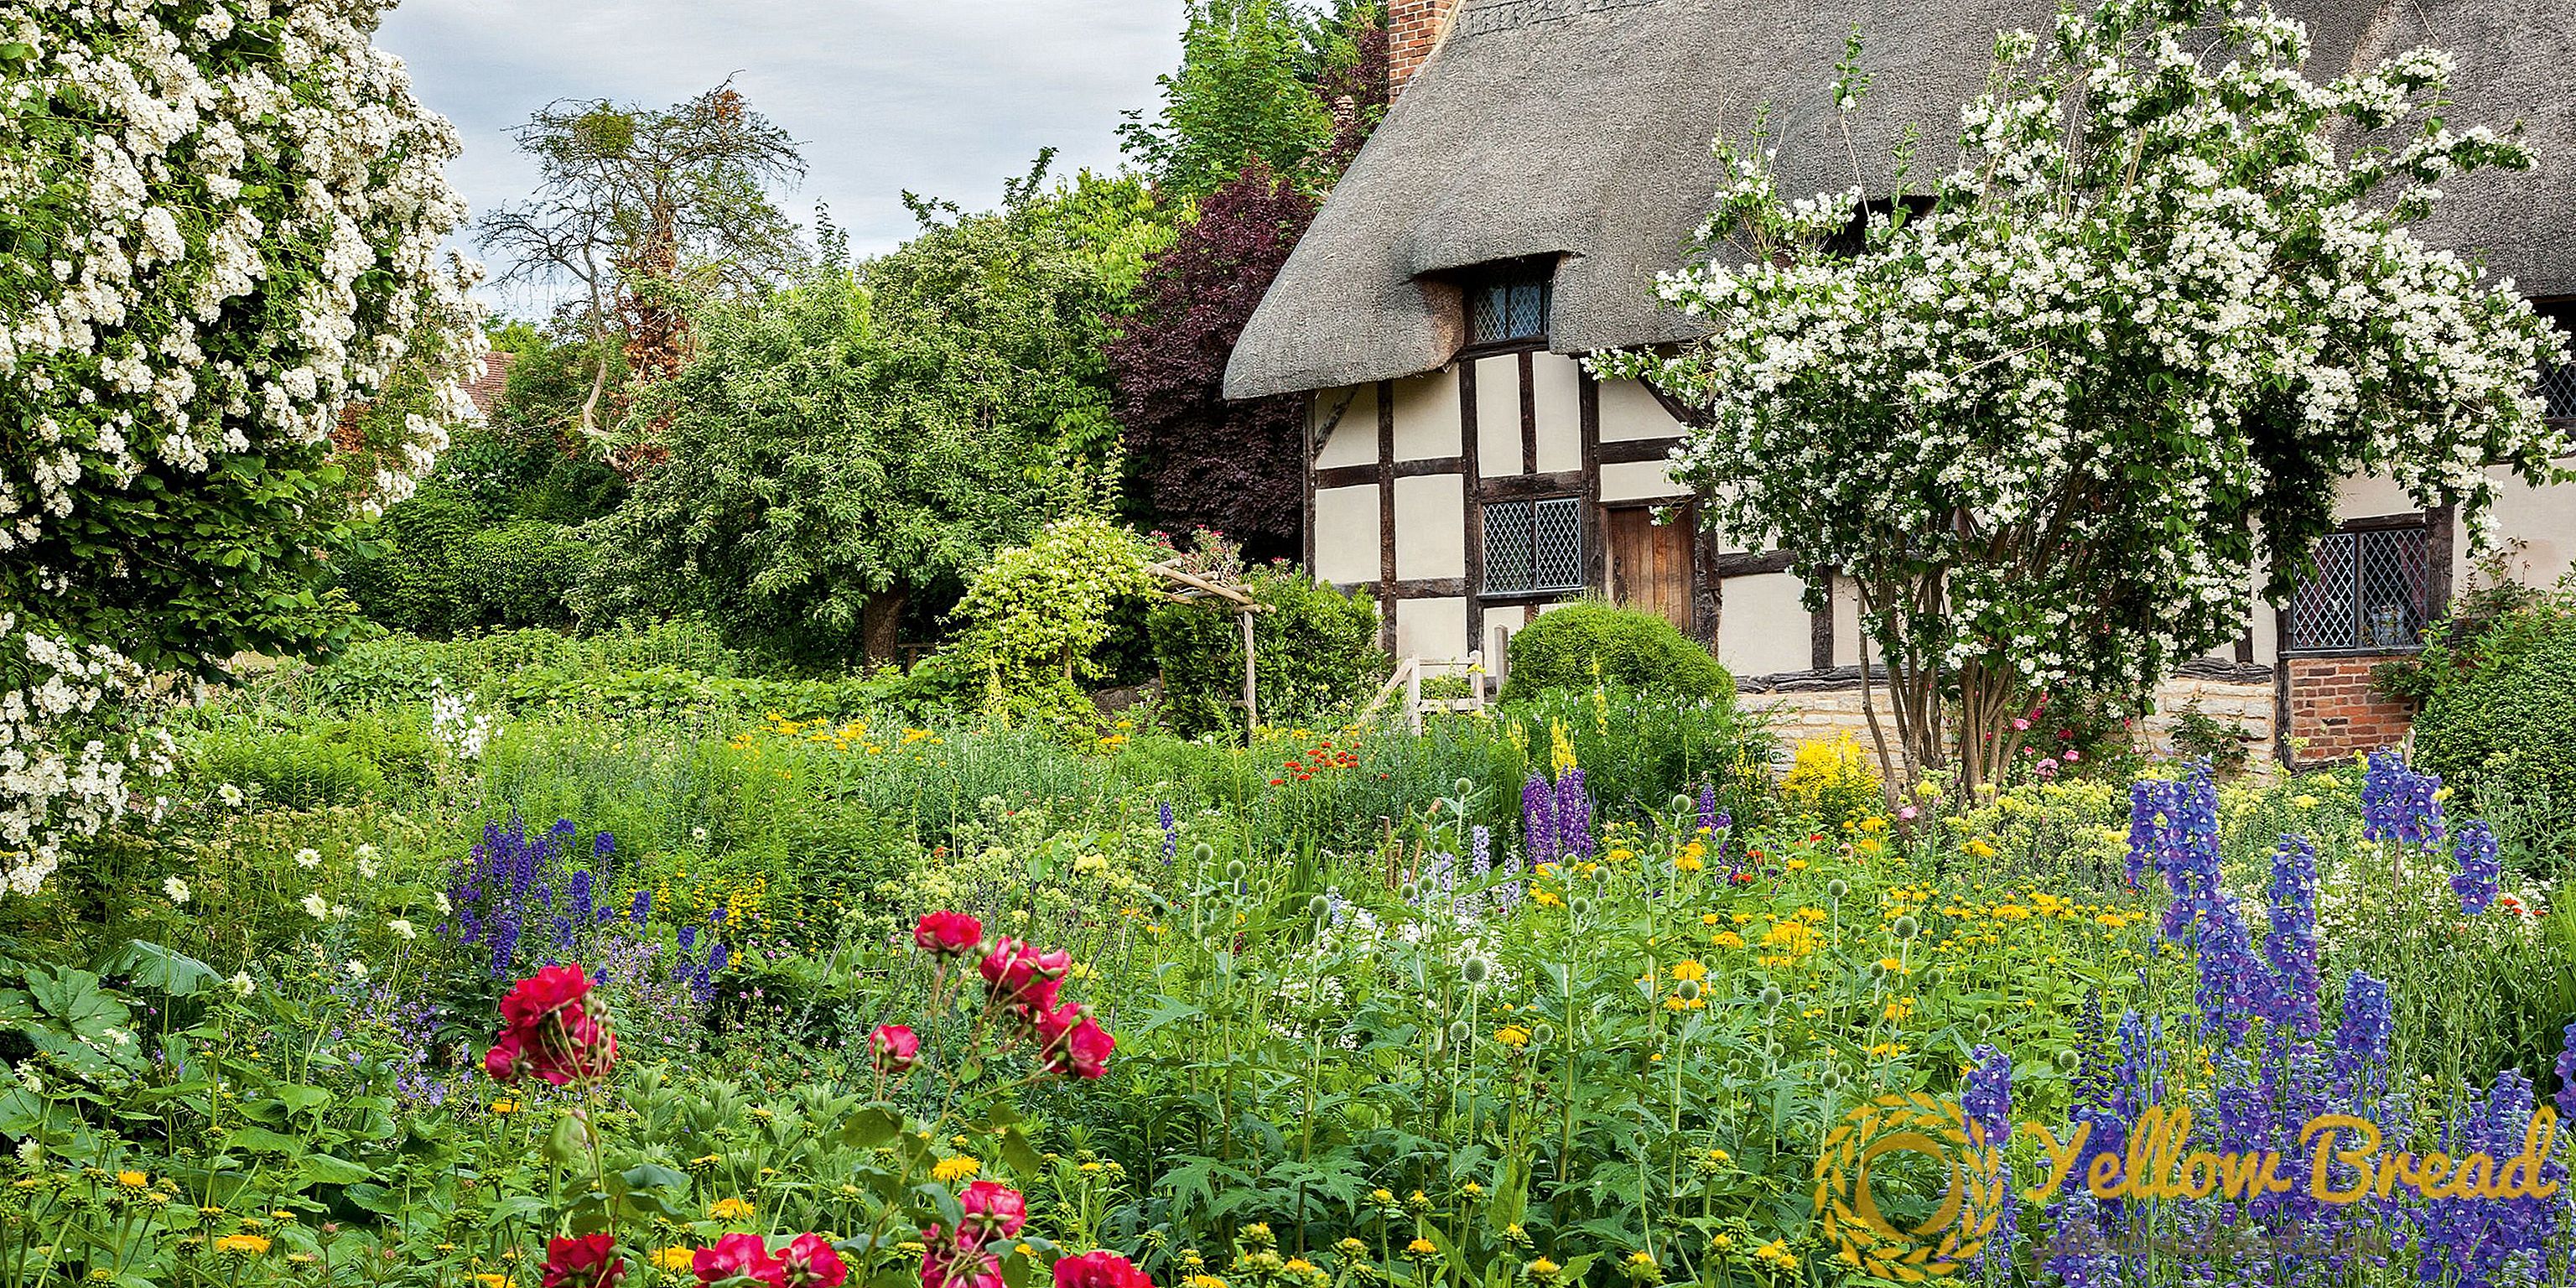 4 แนวคิดการออกแบบสวนสวยจาก William Shakespeare